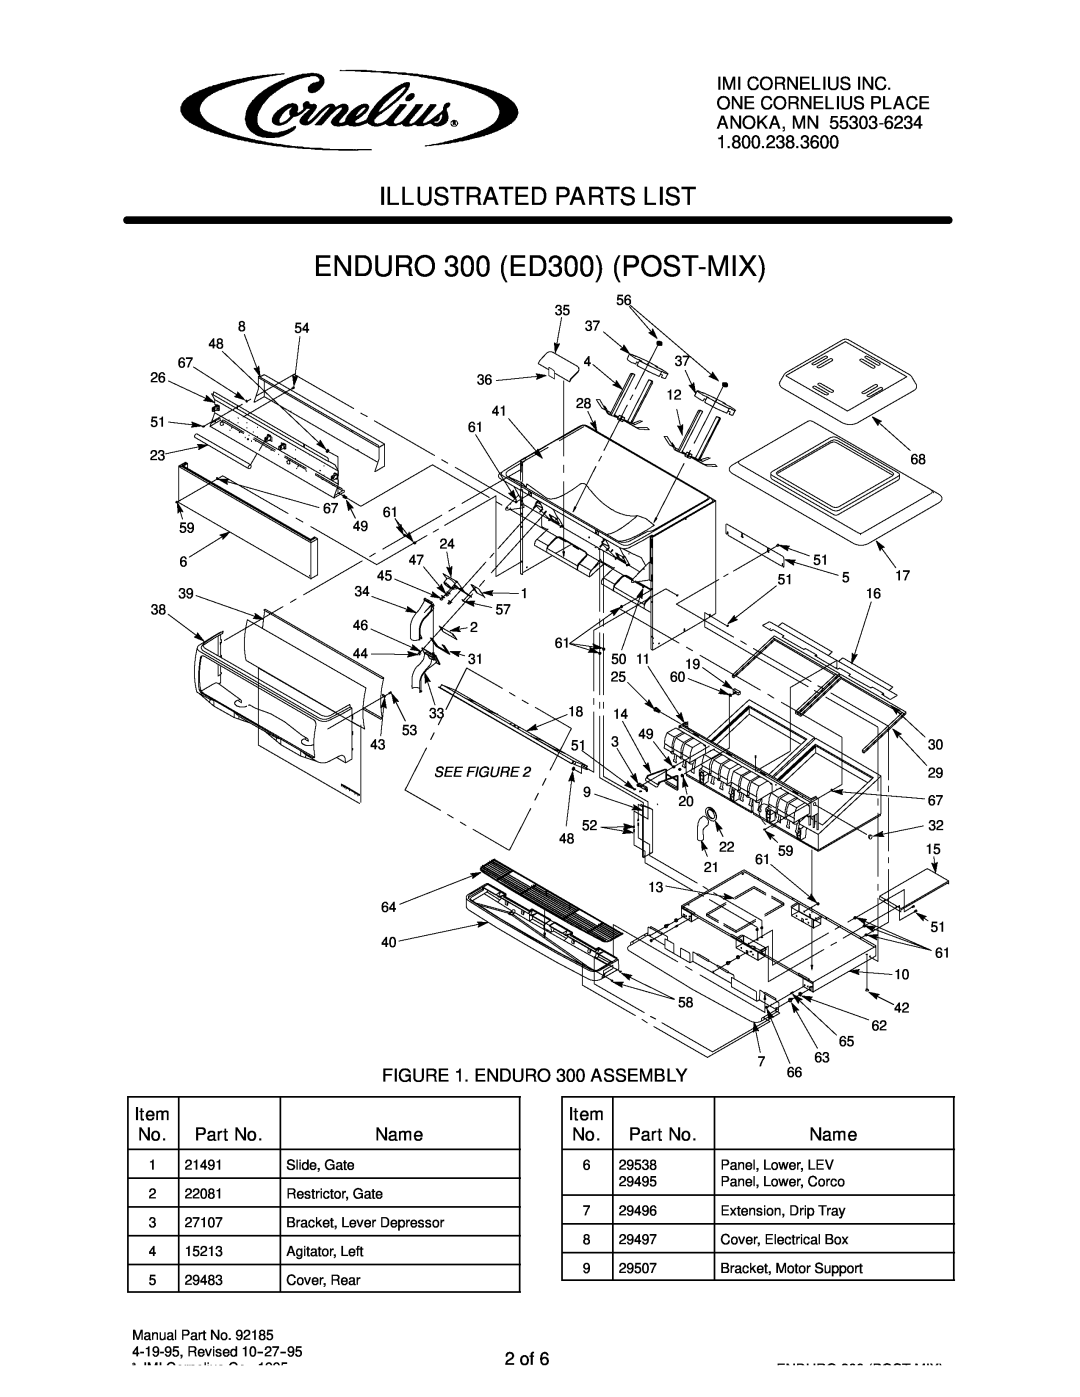 Cornelius ENDURO 300 (ED300) manual ENDURO 300 ED300 POST-MIX, Illustrated Parts List 